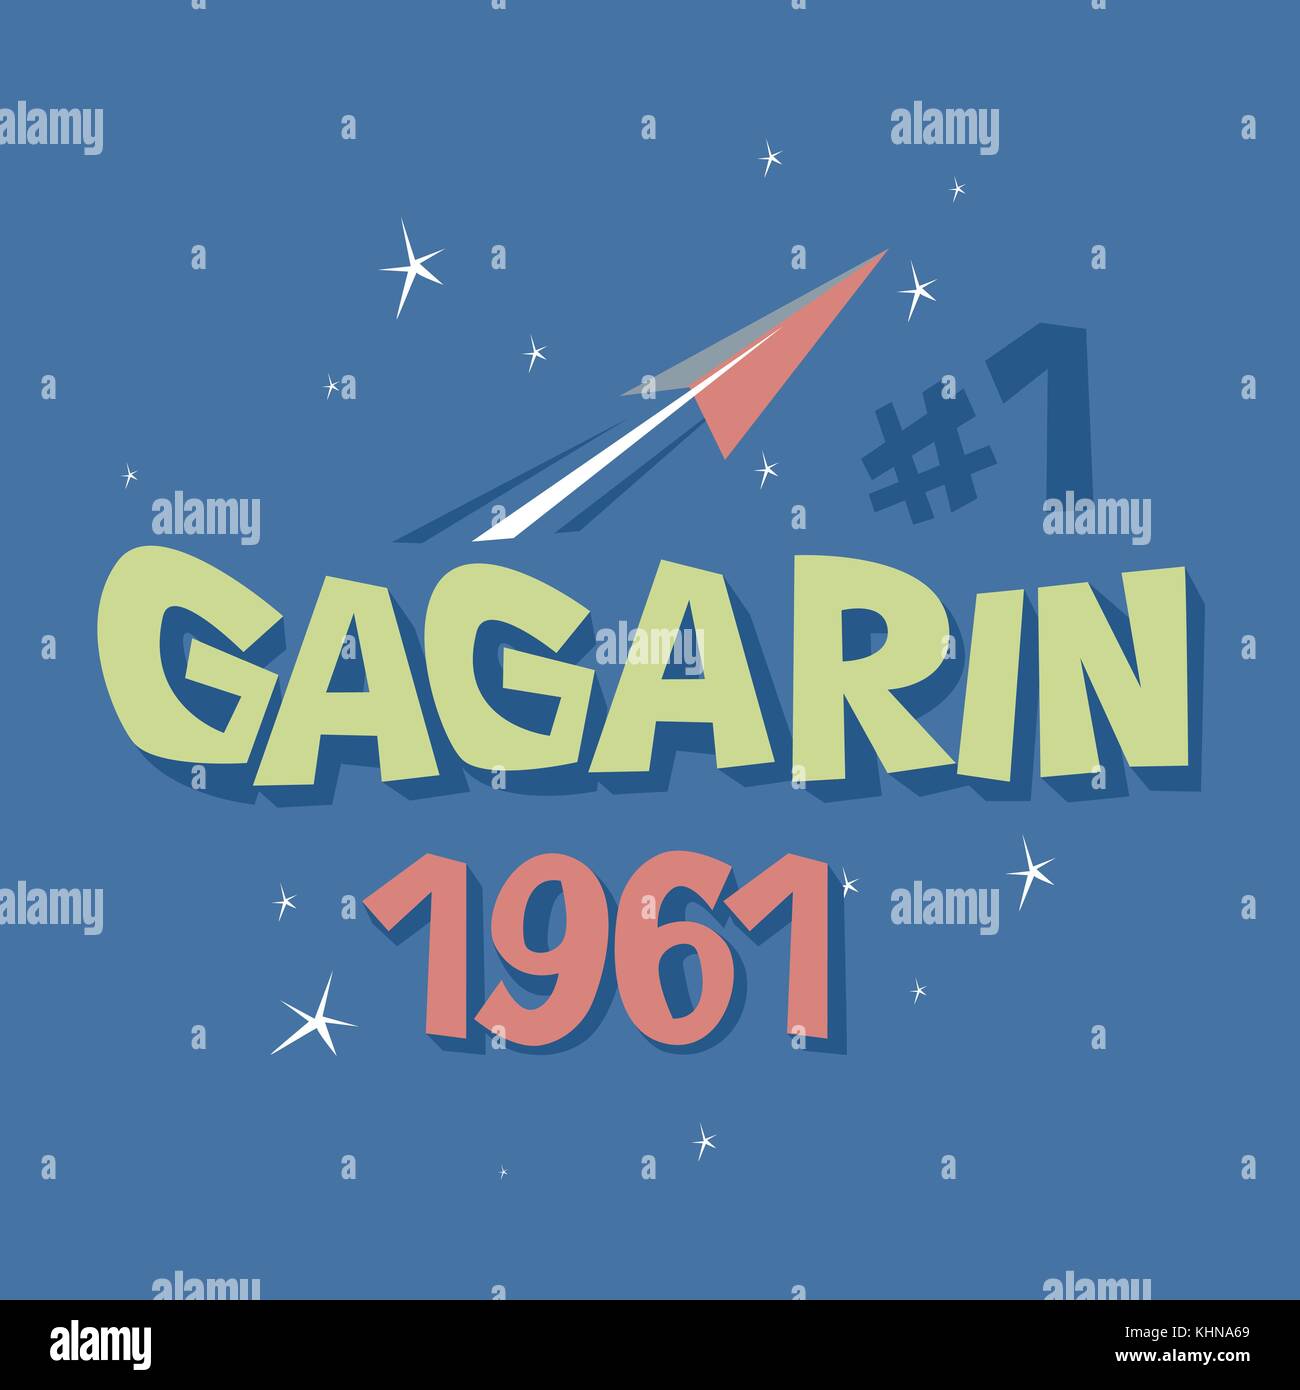 Texte du logo 3068 premier astronaute urss espace, concept Illustration de Vecteur